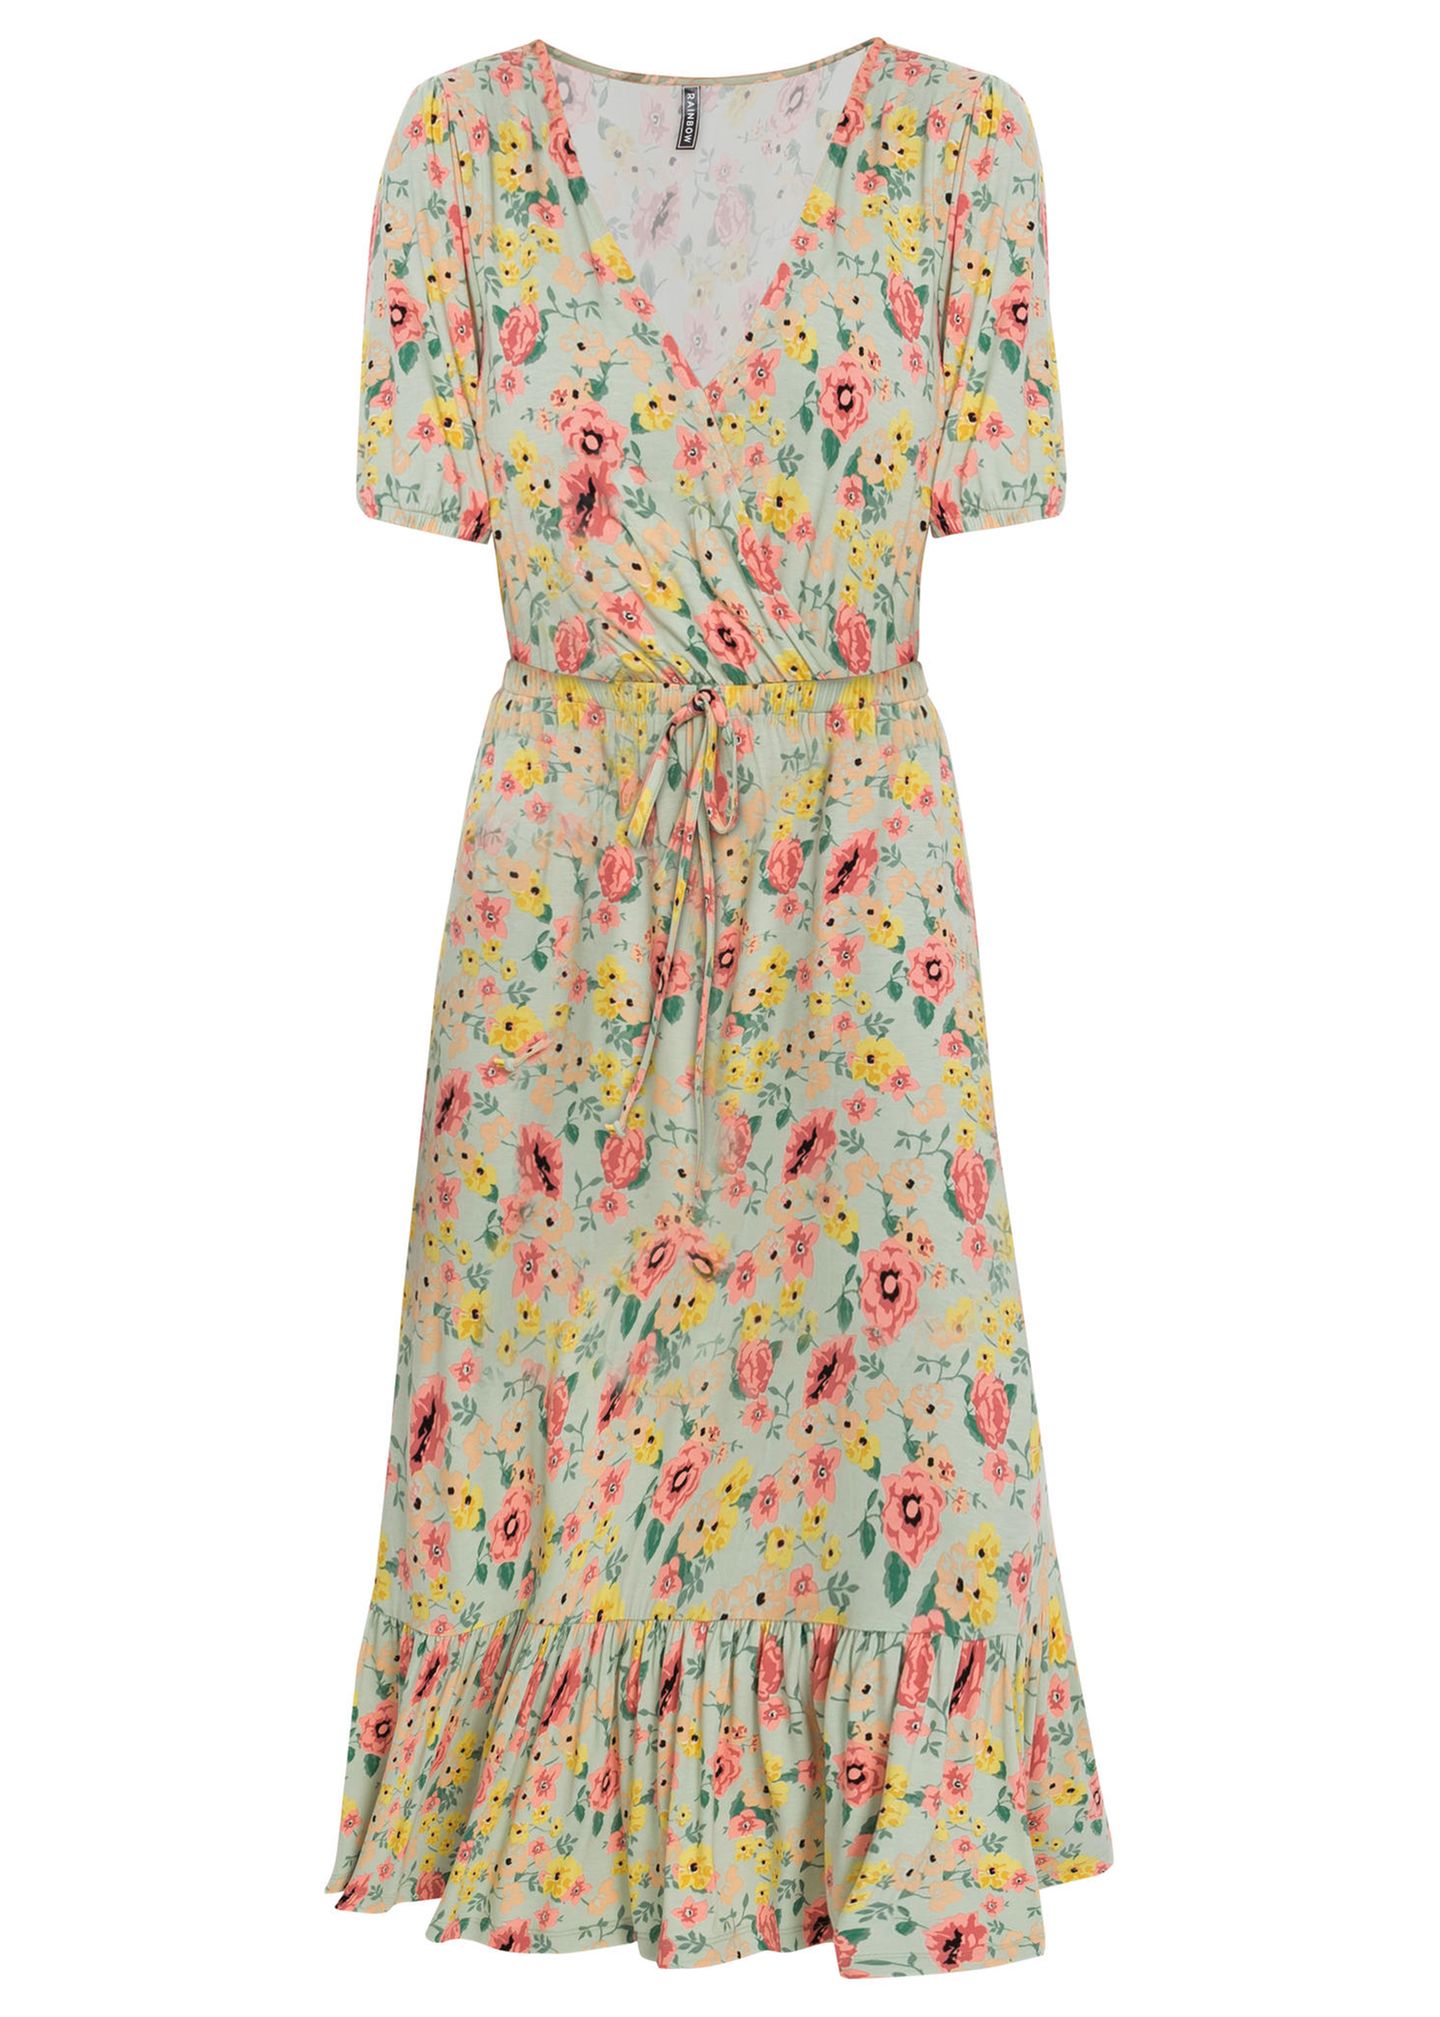 Ob unter dem Strickpullover oder allein getragen, dieses toll geschnittene Midi-Kleid mit Blümchenmuster eignet sich perfekt für Frühjahr und Sommer. Von Bonprix, 29,99 Euro